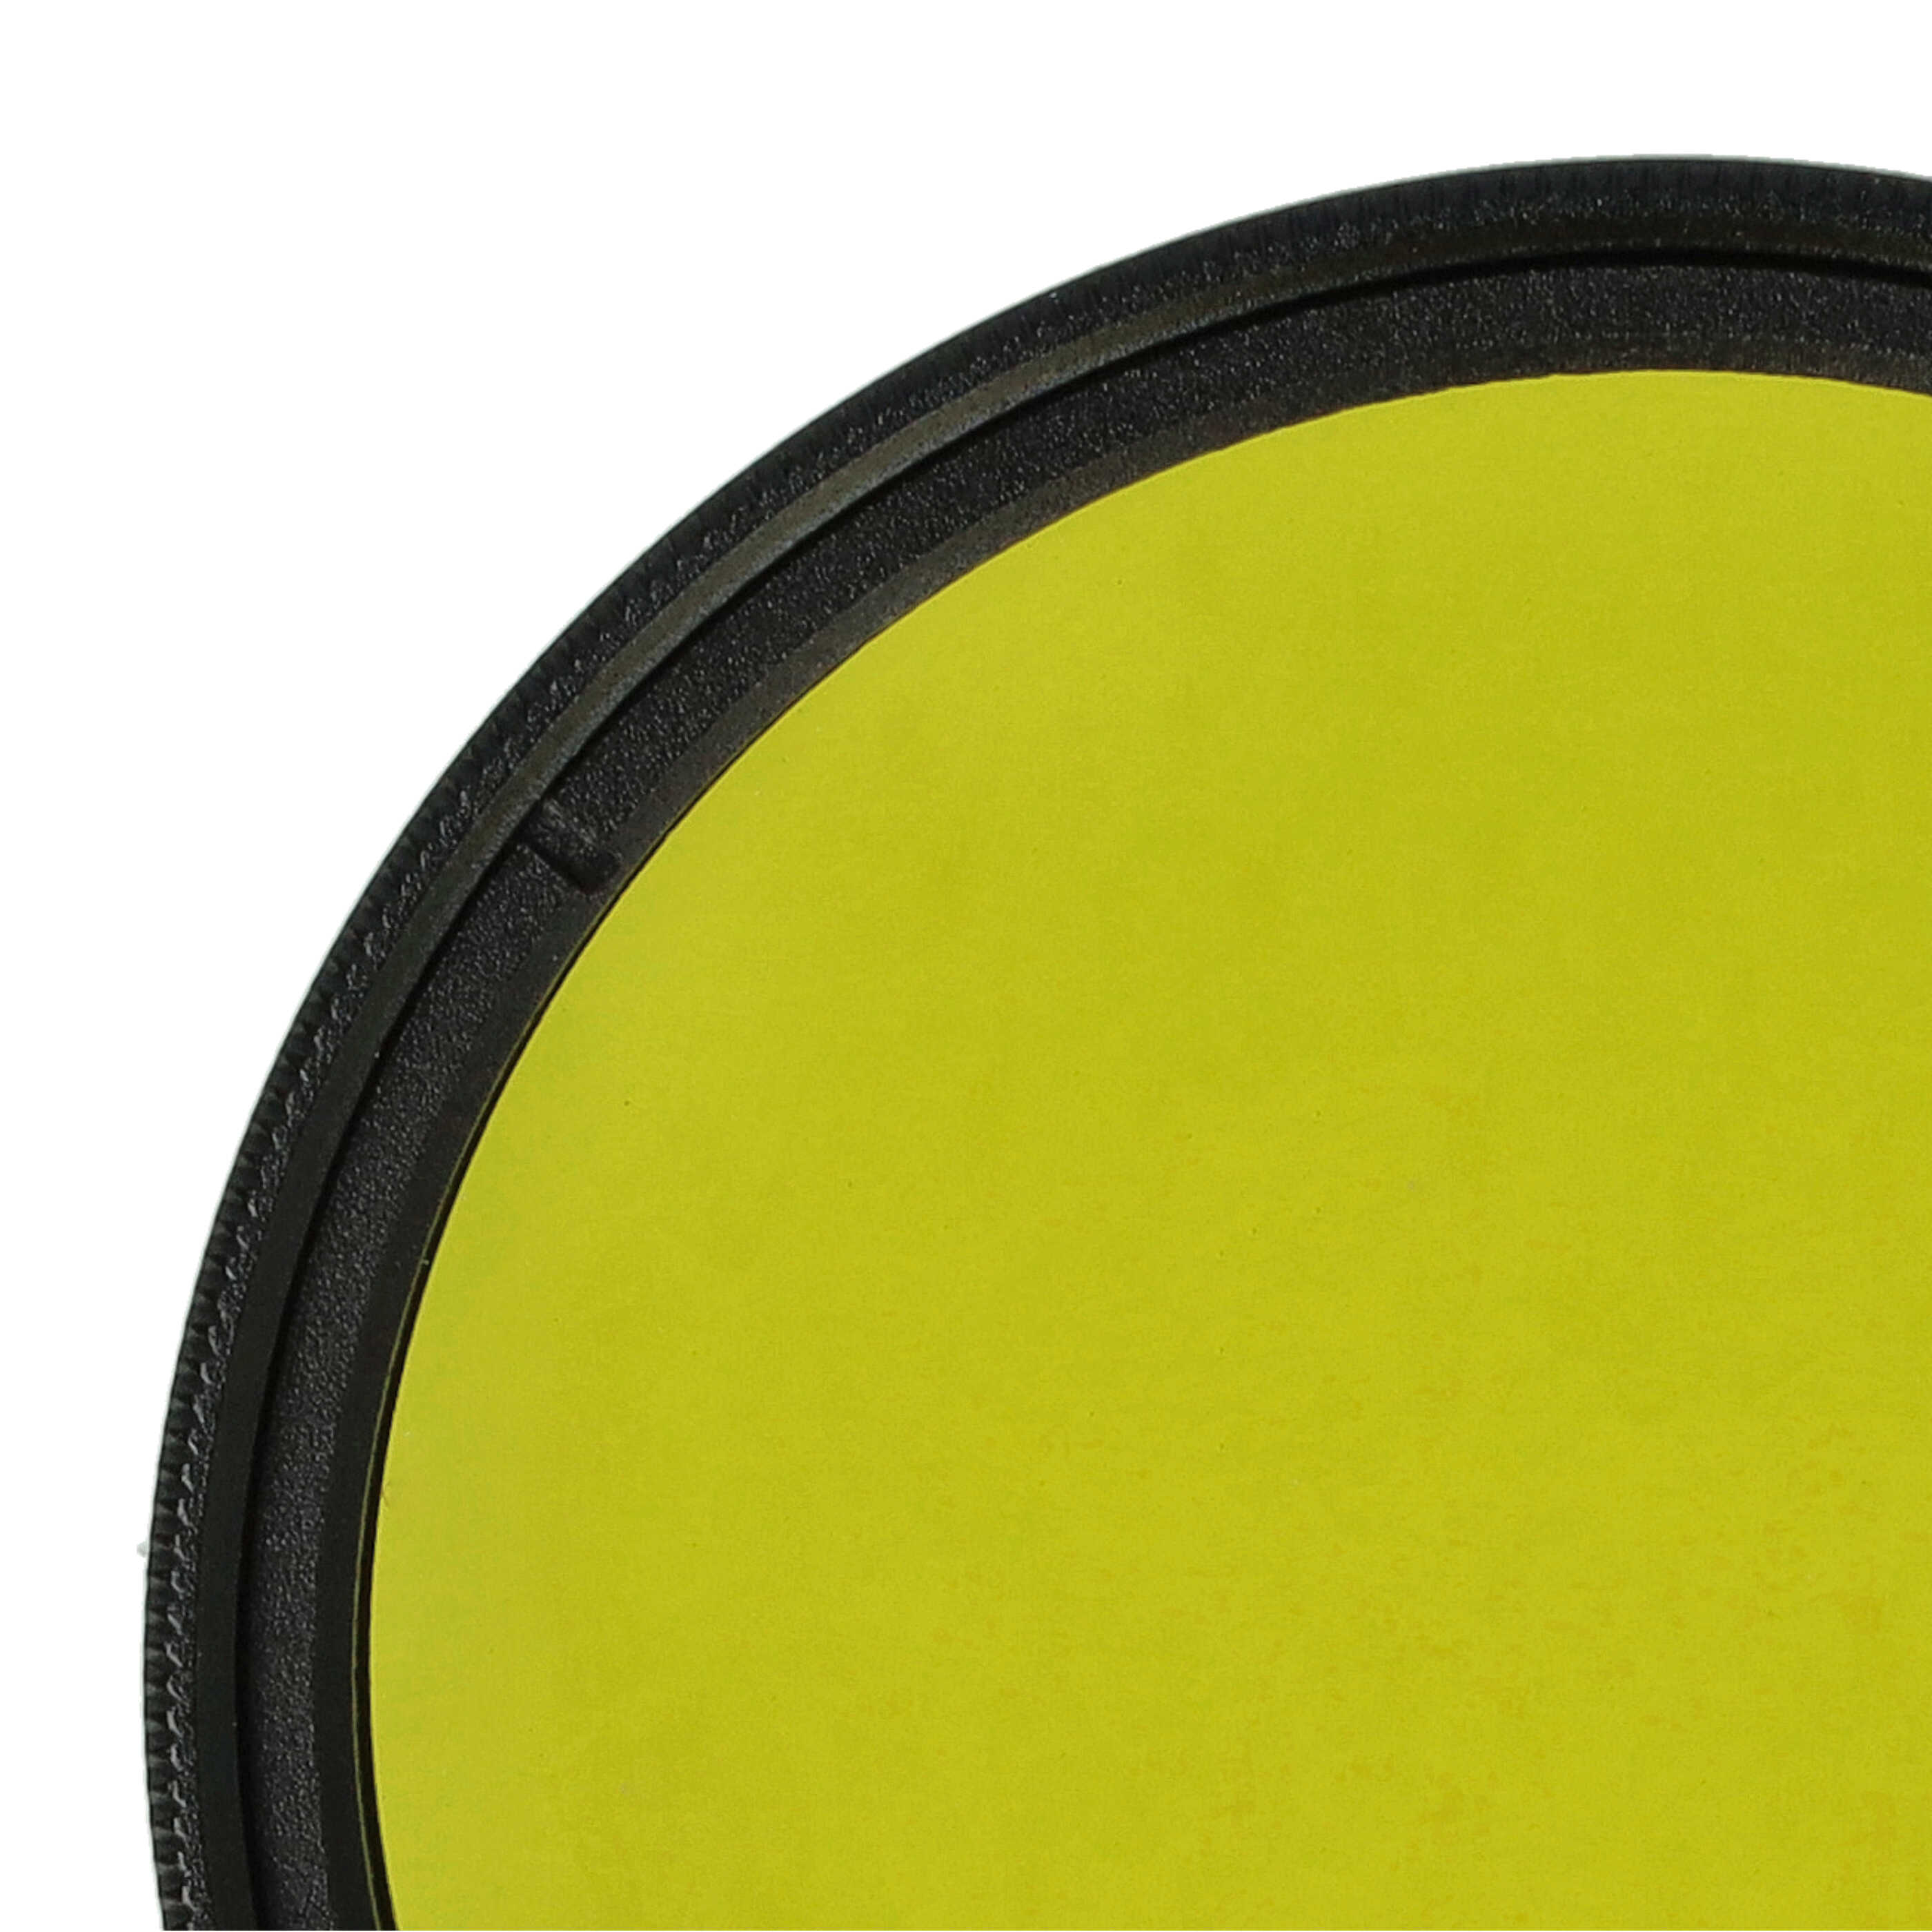 Filtro colorato per obiettivi fotocamera con filettatura da 49 mm - filtro giallo